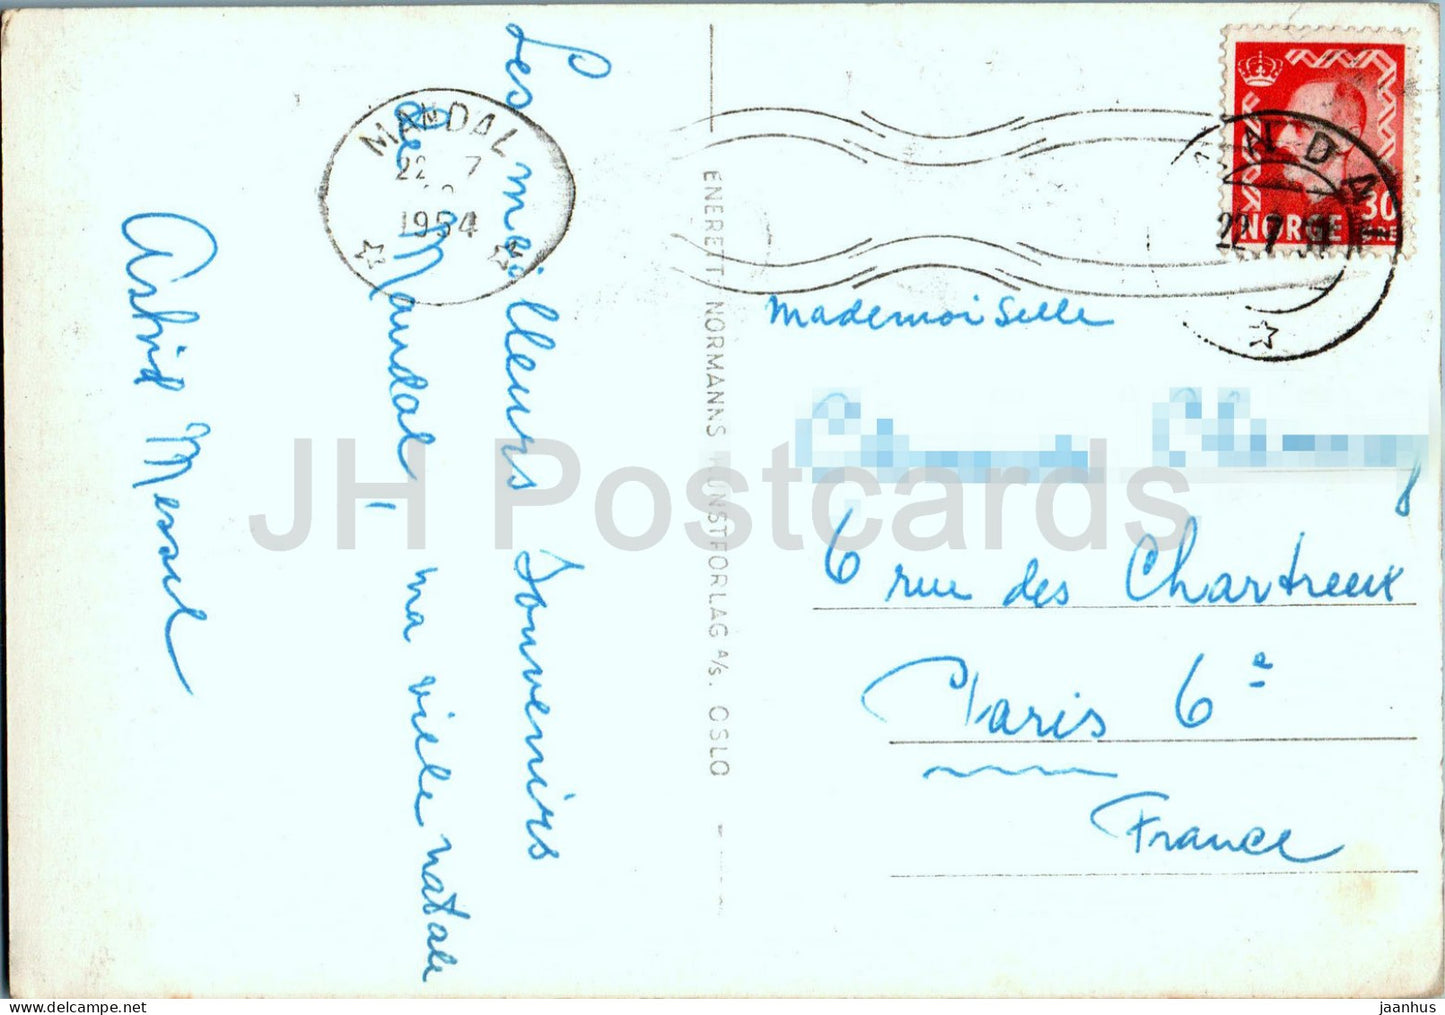 Sjosanden - Mandal - plage - carte postale ancienne - 1954 - Norvège - utilisé 